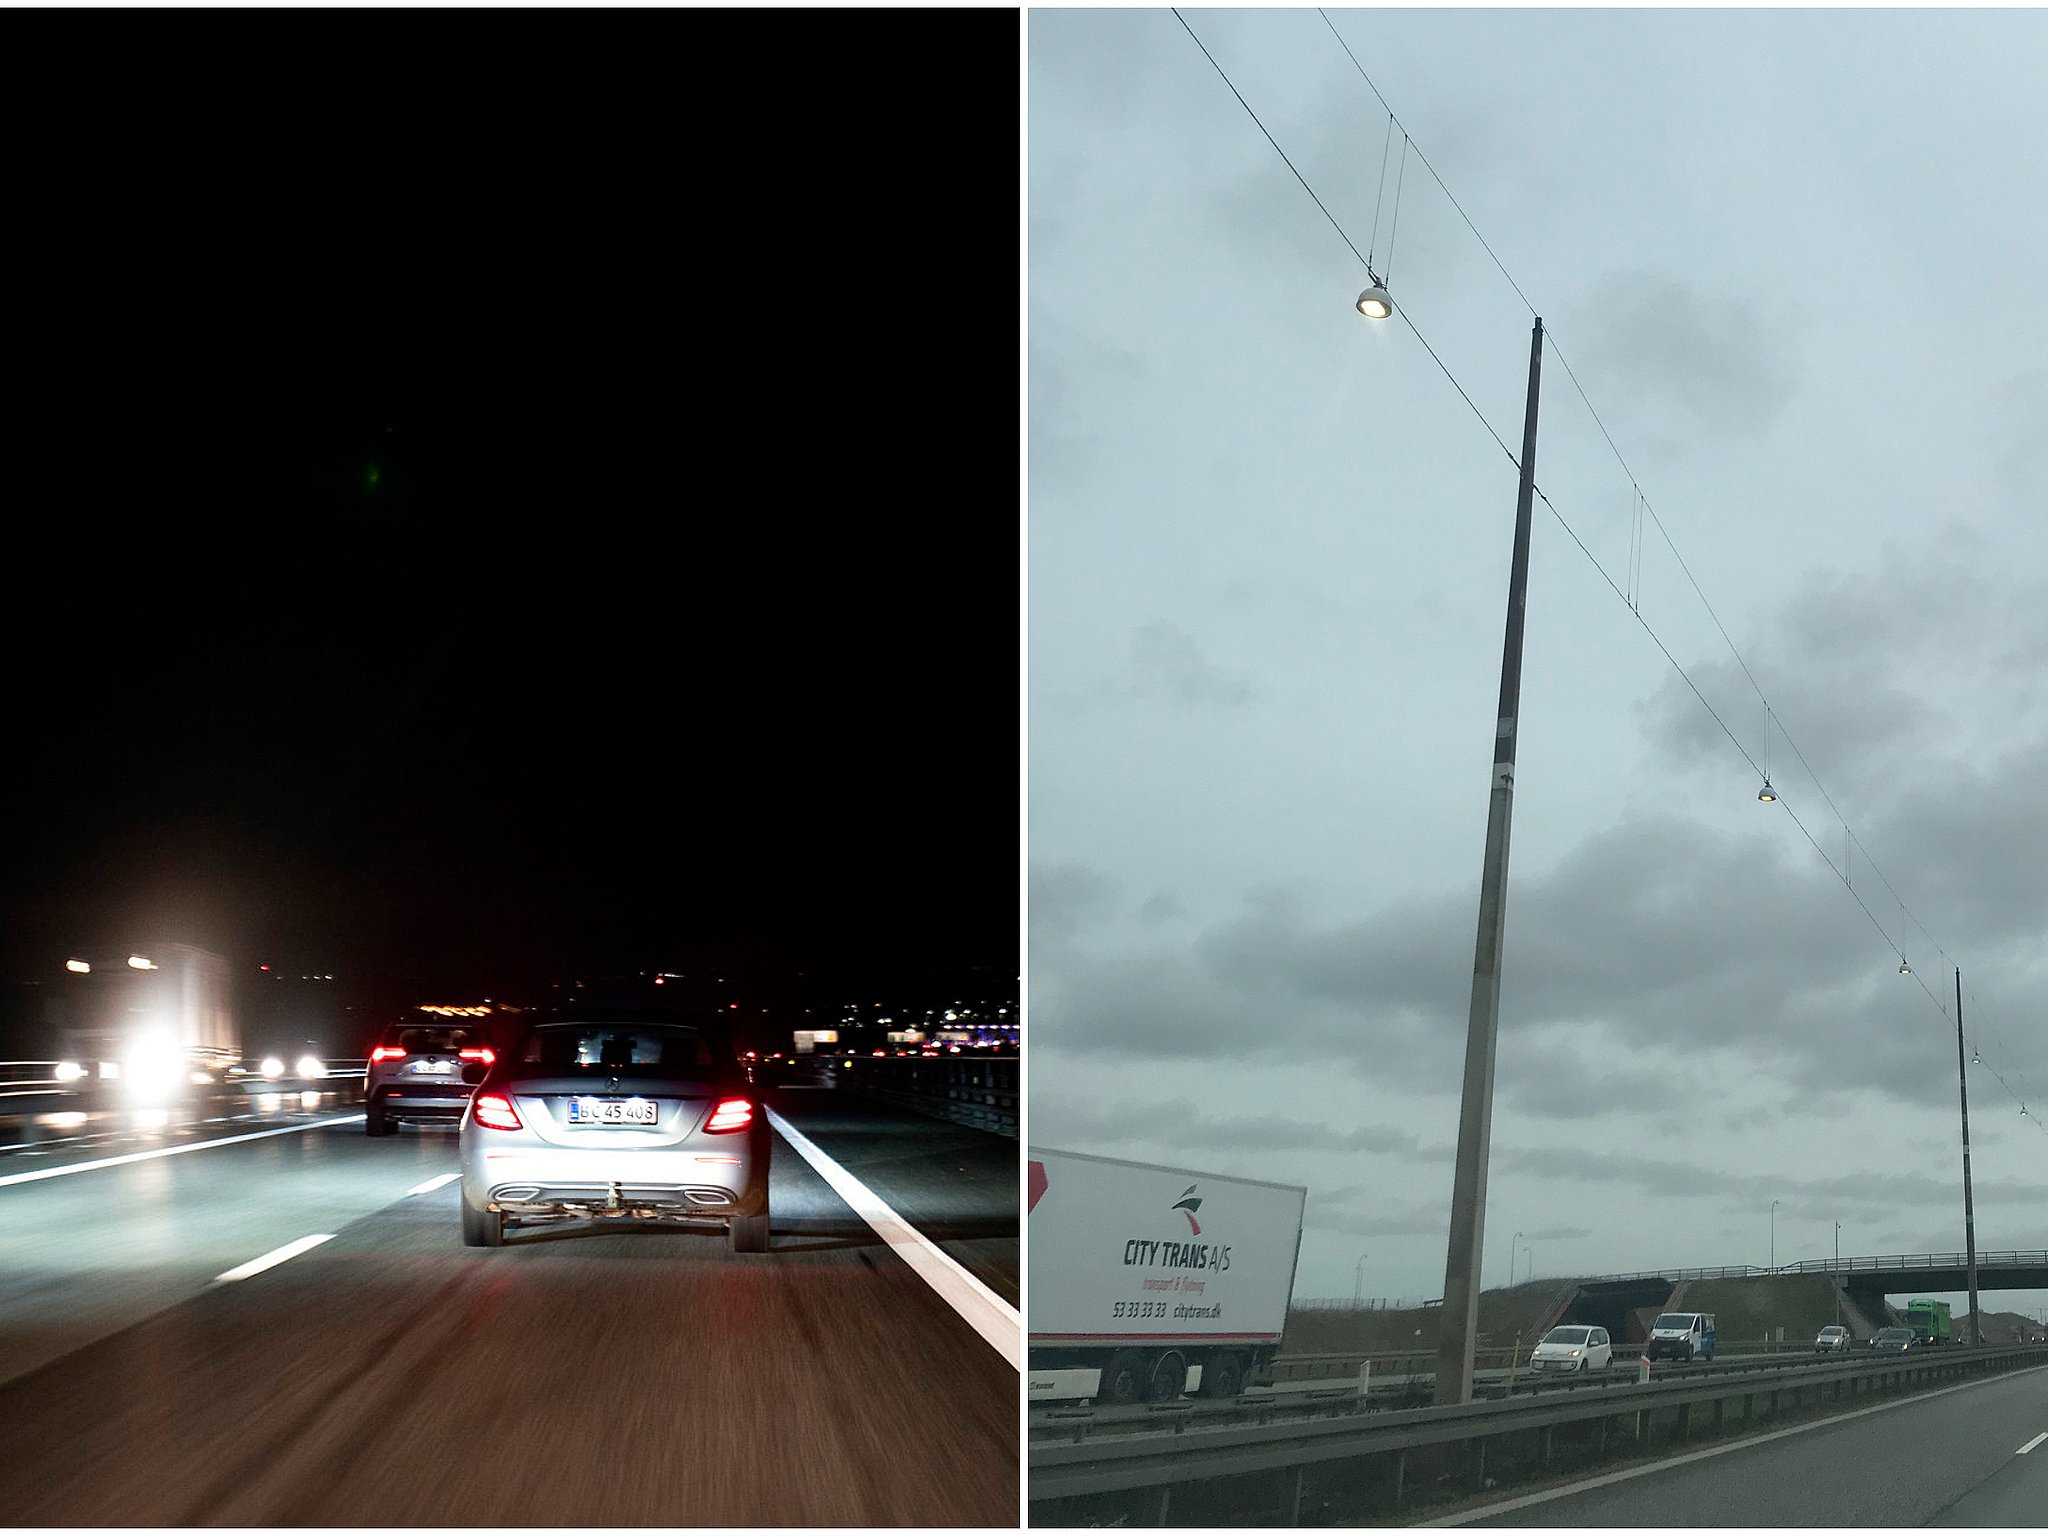 jorden Himlen Gentleman Ups: Sparer lys på motorvej væk om natten - fuldt blus på om dagen | TV 2  Kosmopol